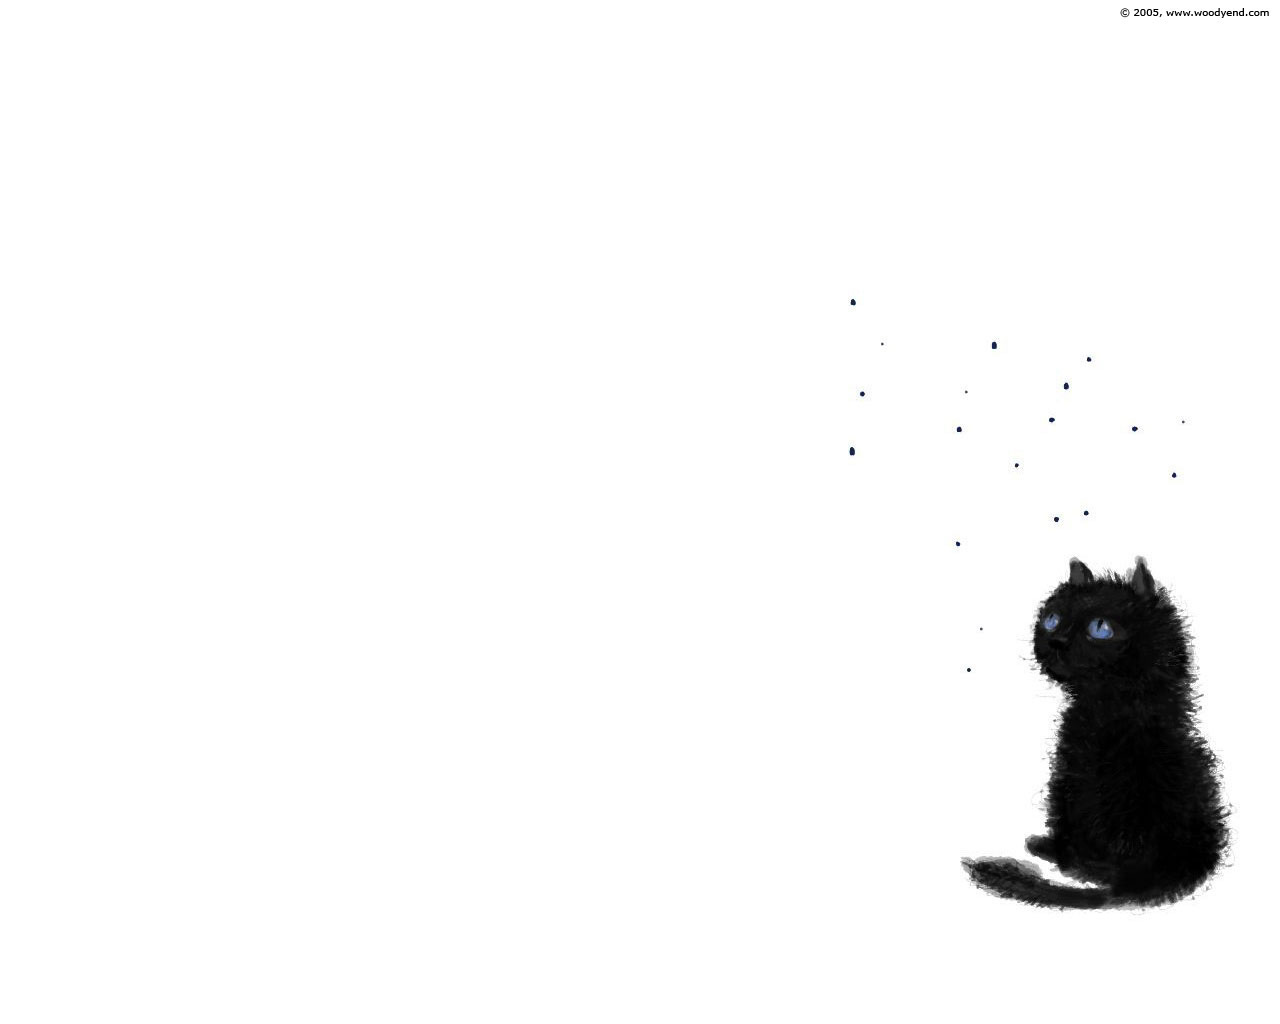 50 素晴らしい猫 壁紙 イラスト シンプル すべての動物画像